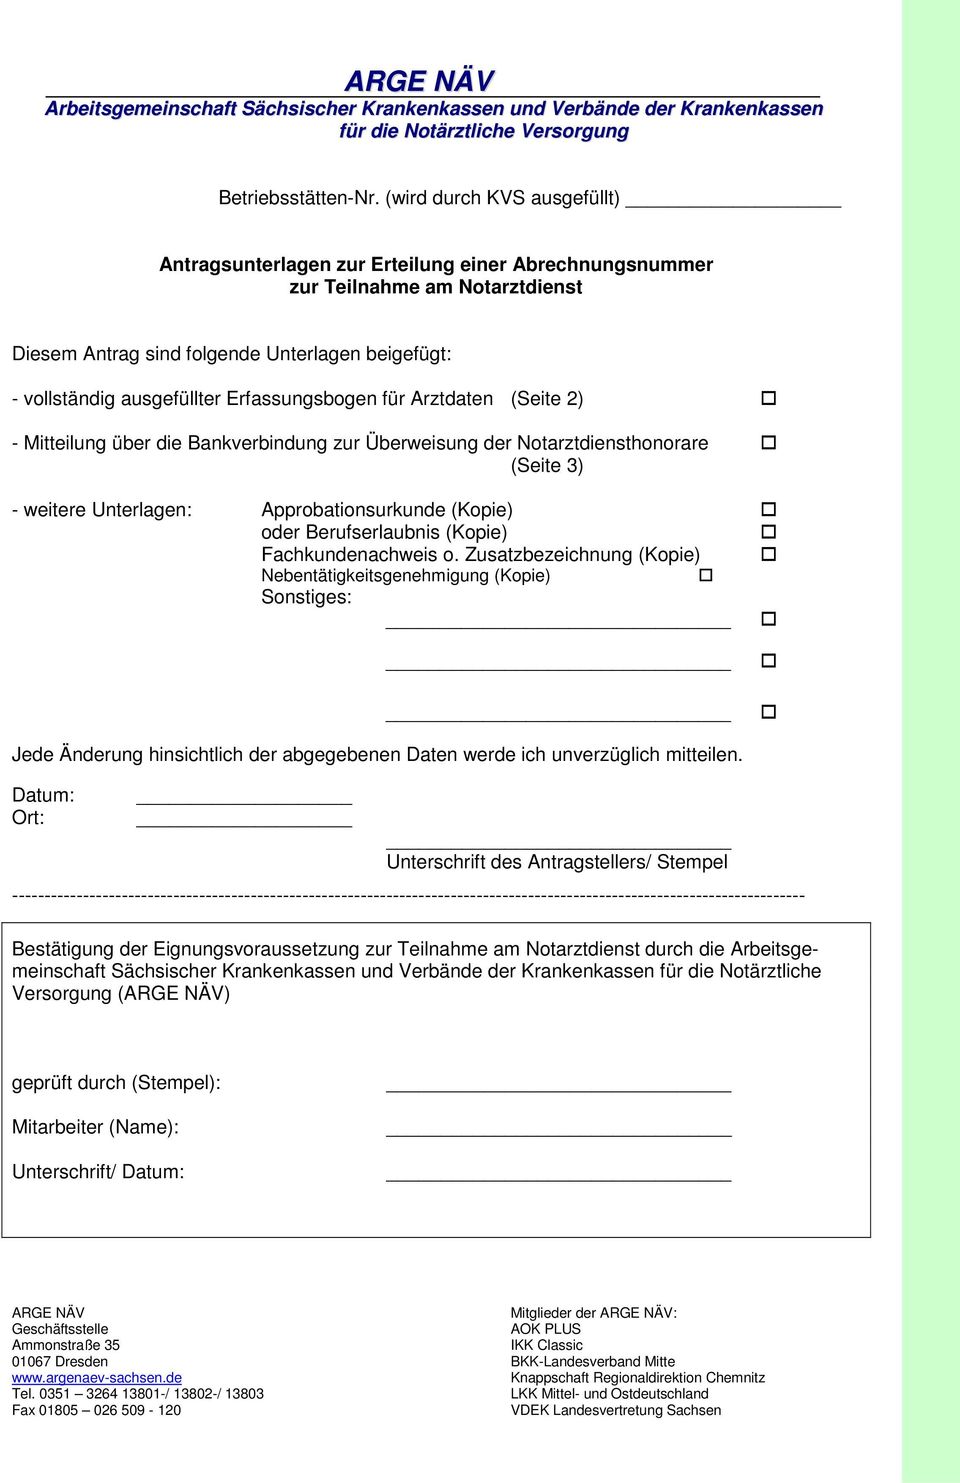 Erfassungsbogen für Arztdaten (Seite 2) - Mitteilung über die Bankverbindung zur Überweisung der Notarztdiensthonorare (Seite 3) - weitere Unterlagen: Approbationsurkunde (Kopie) oder Berufserlaubnis